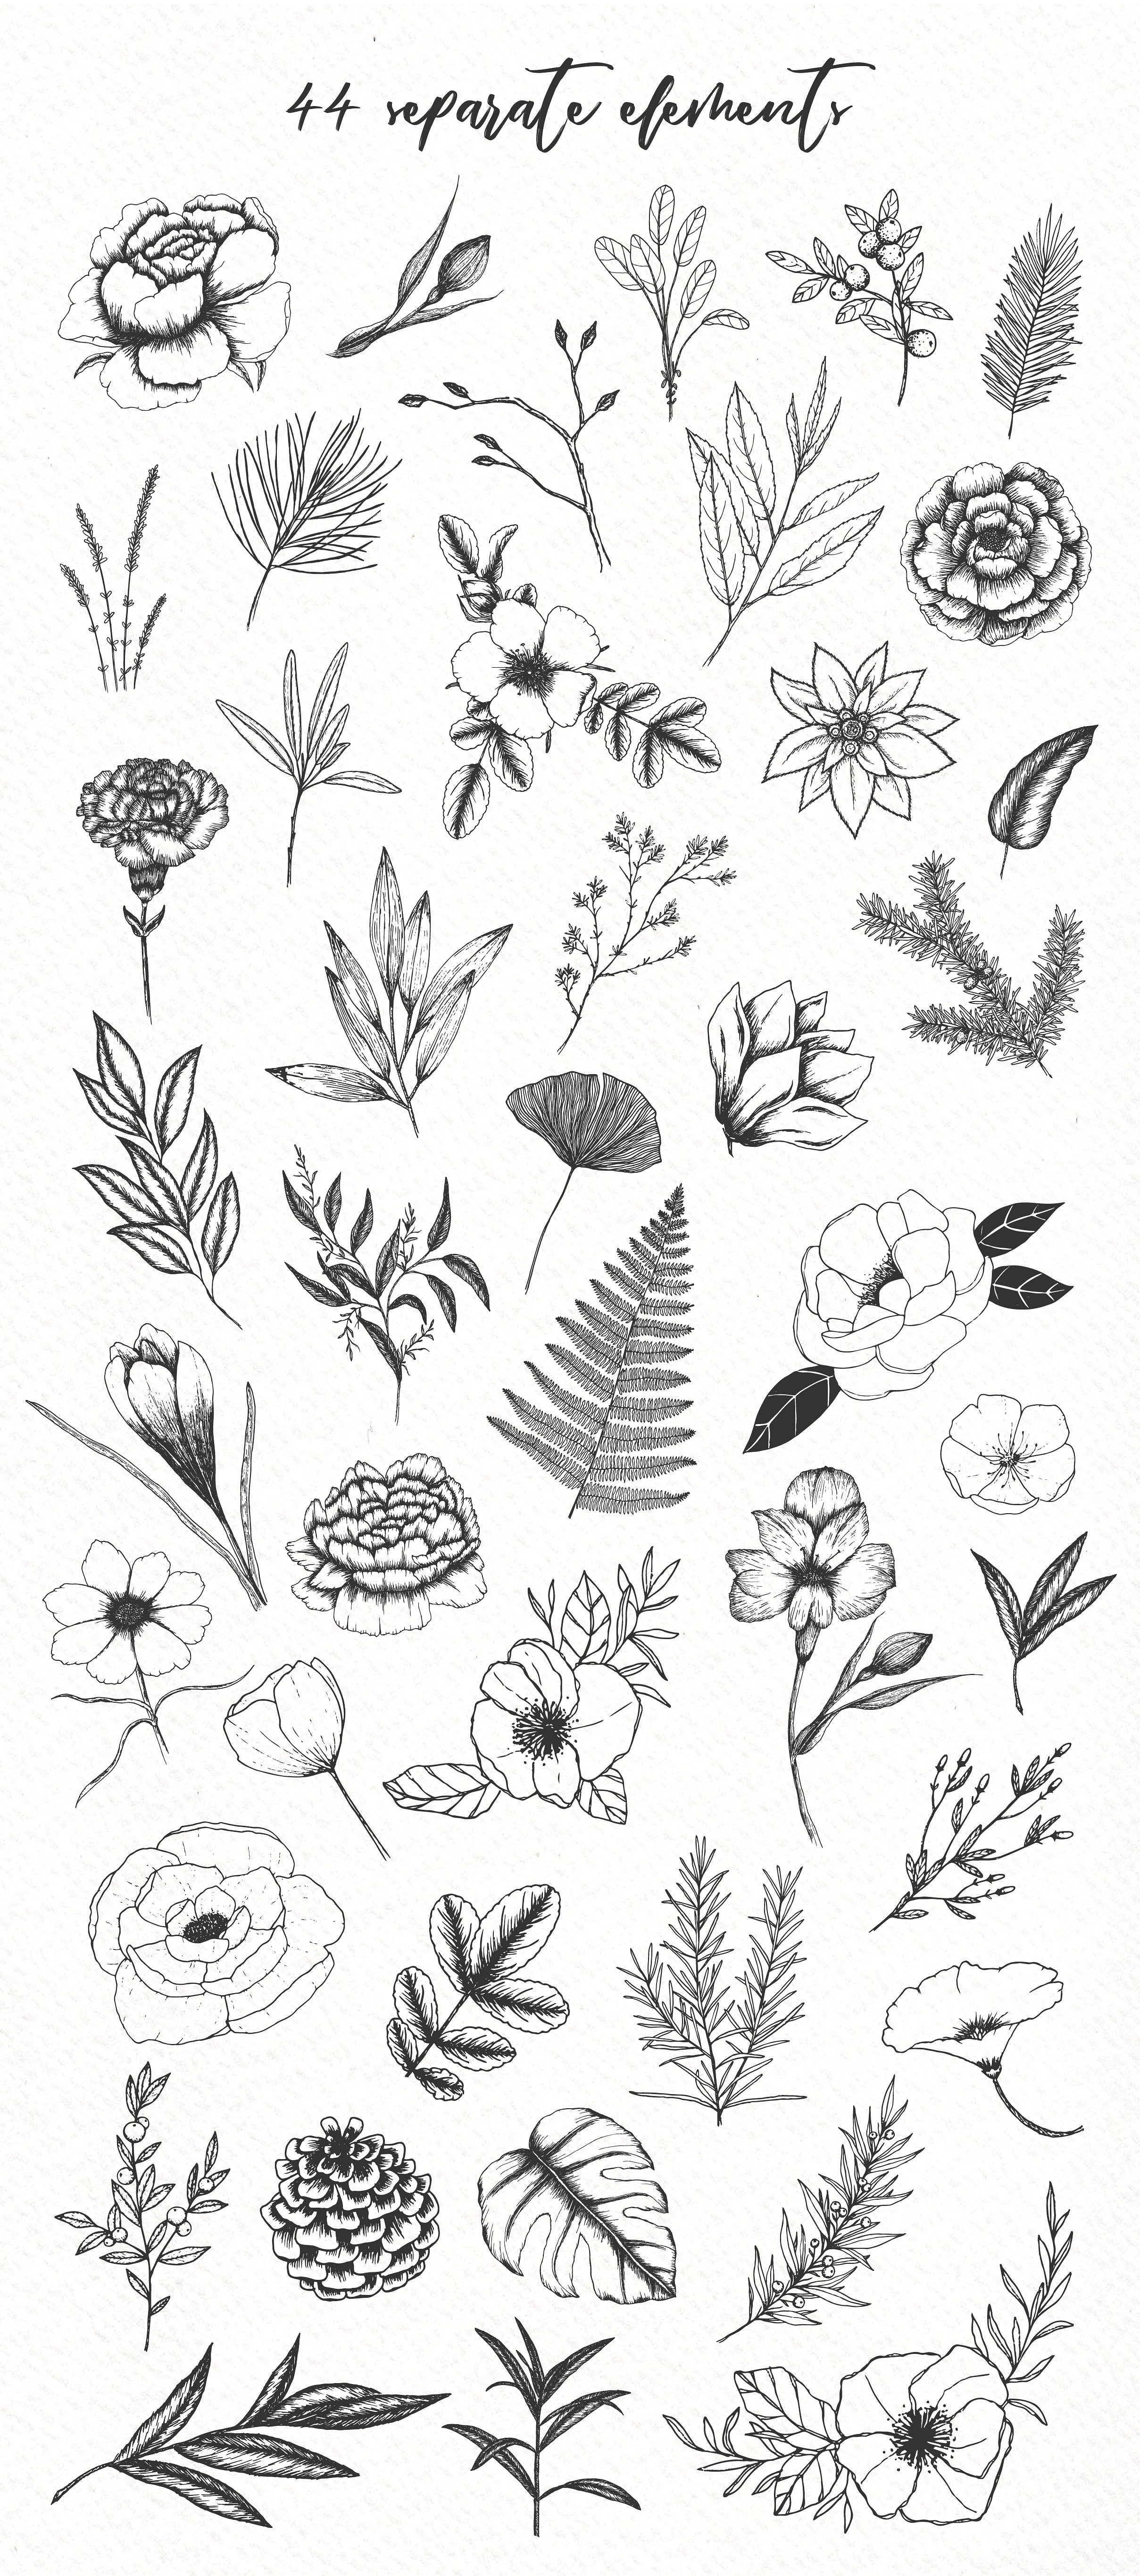 极简主义手绘植物插图包插图1